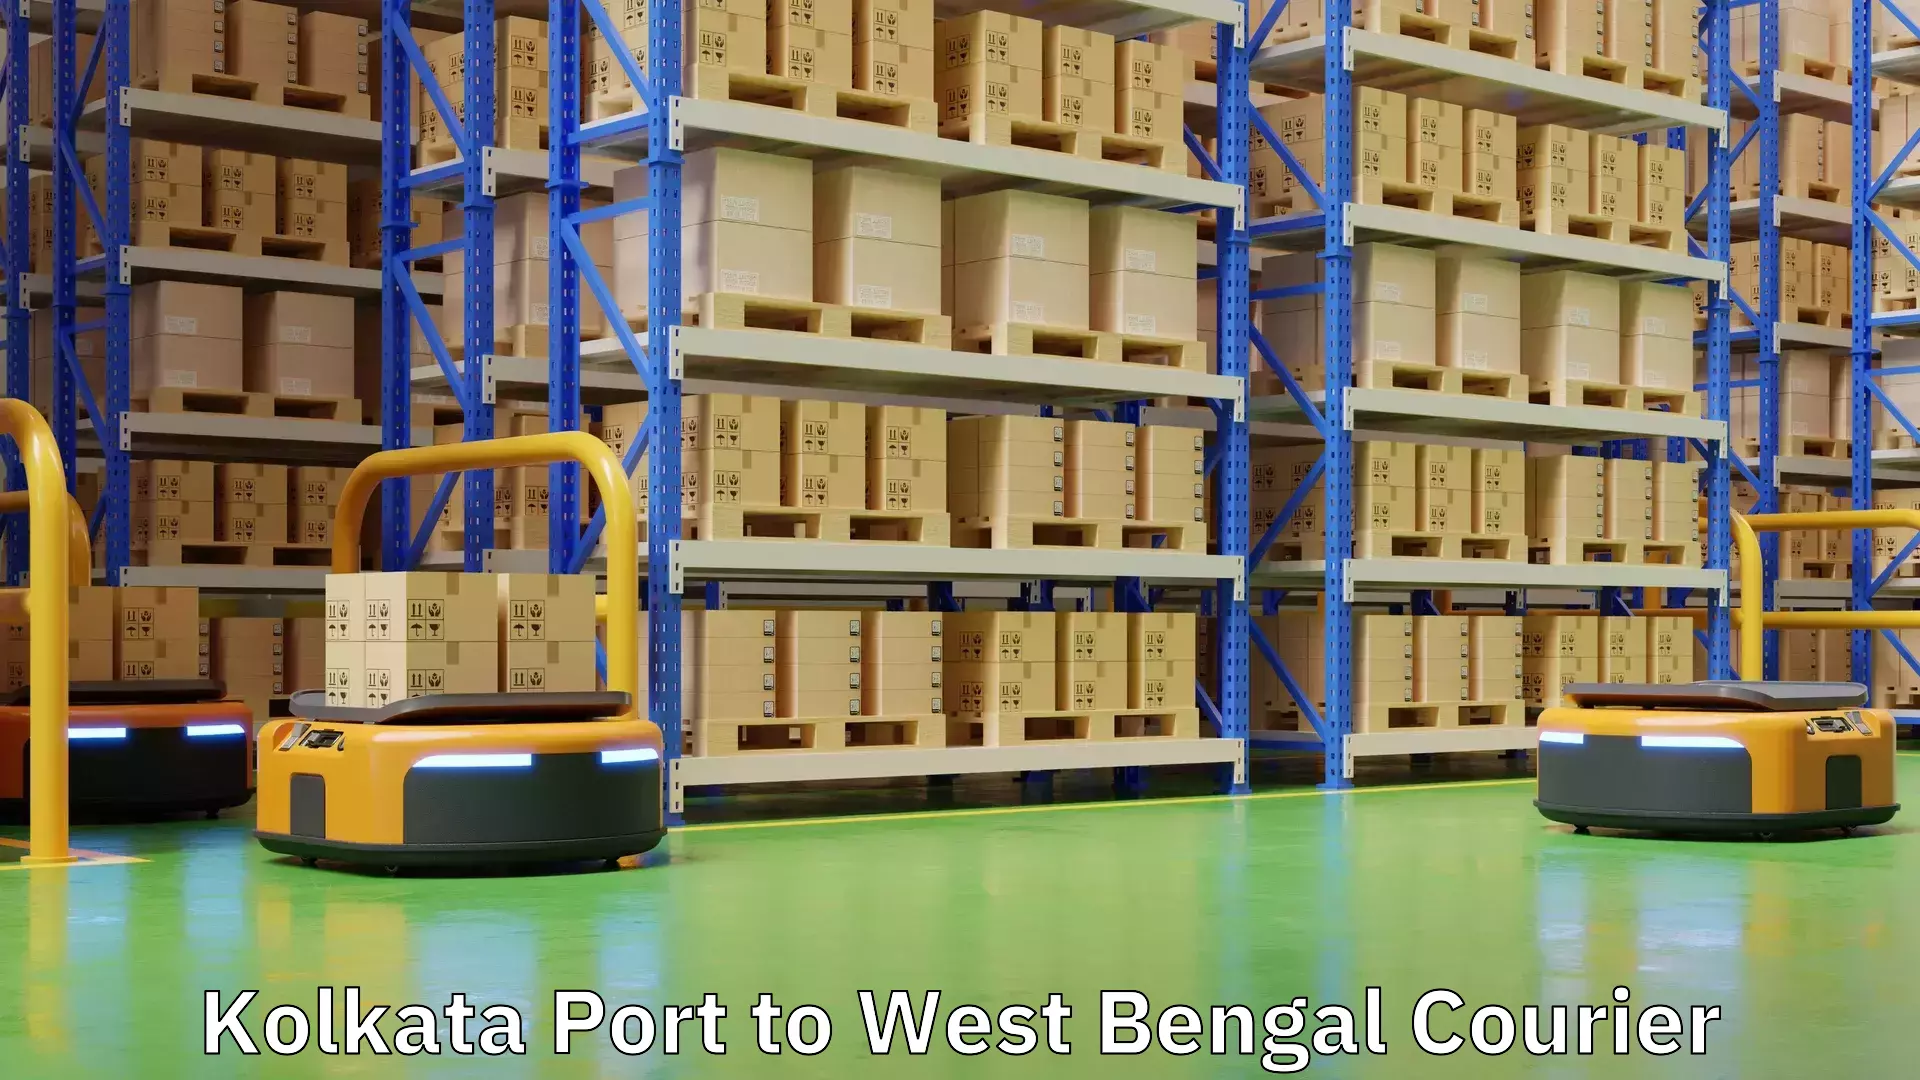 Urban courier service Kolkata Port to Guskhara